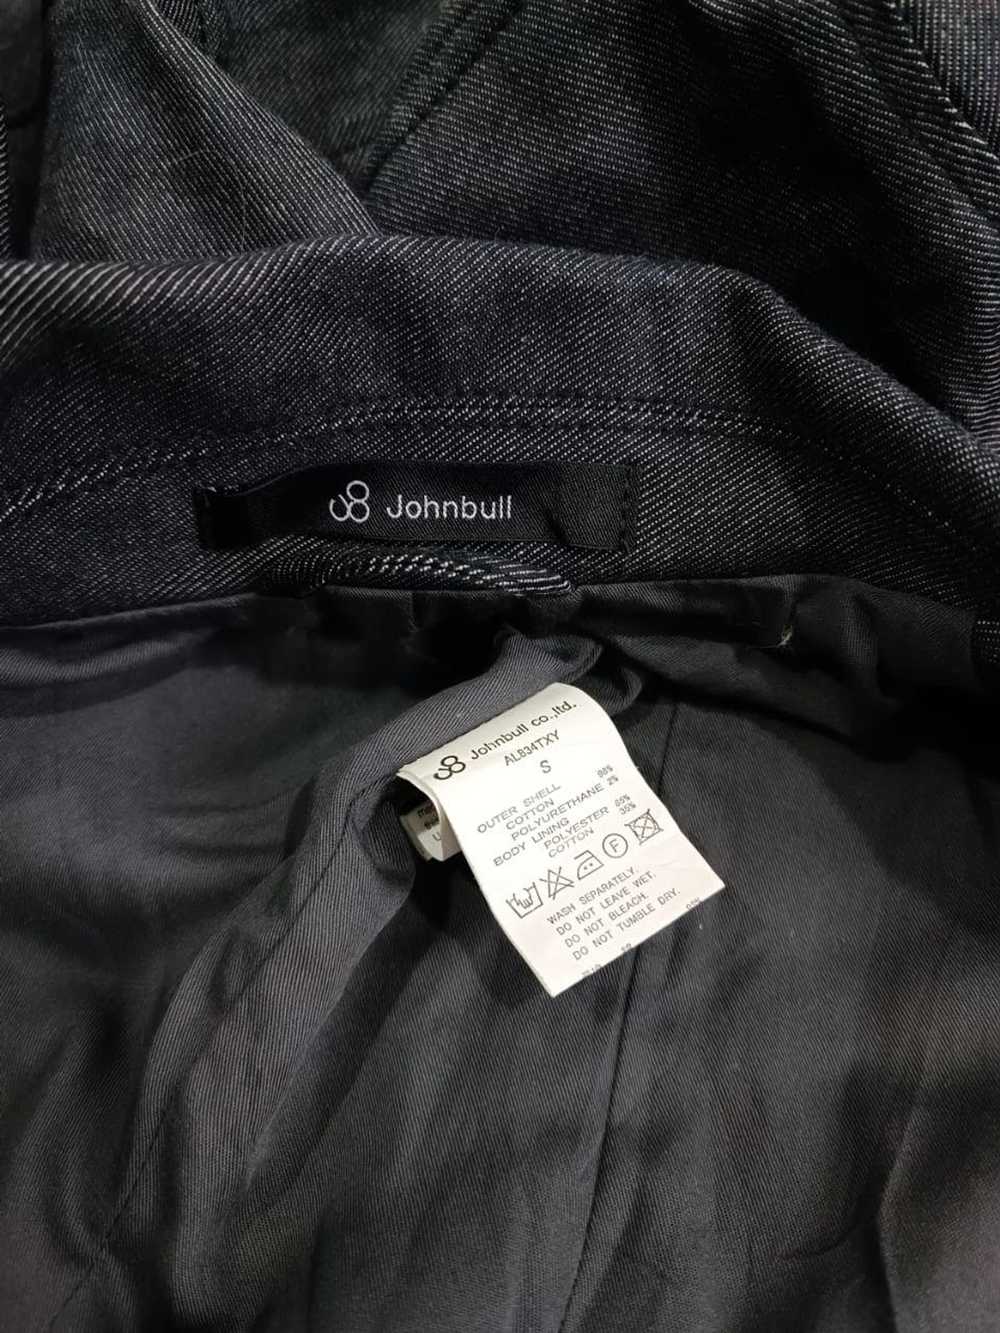 Denim Jacket × John Bull × Streetwear John bull d… - image 3